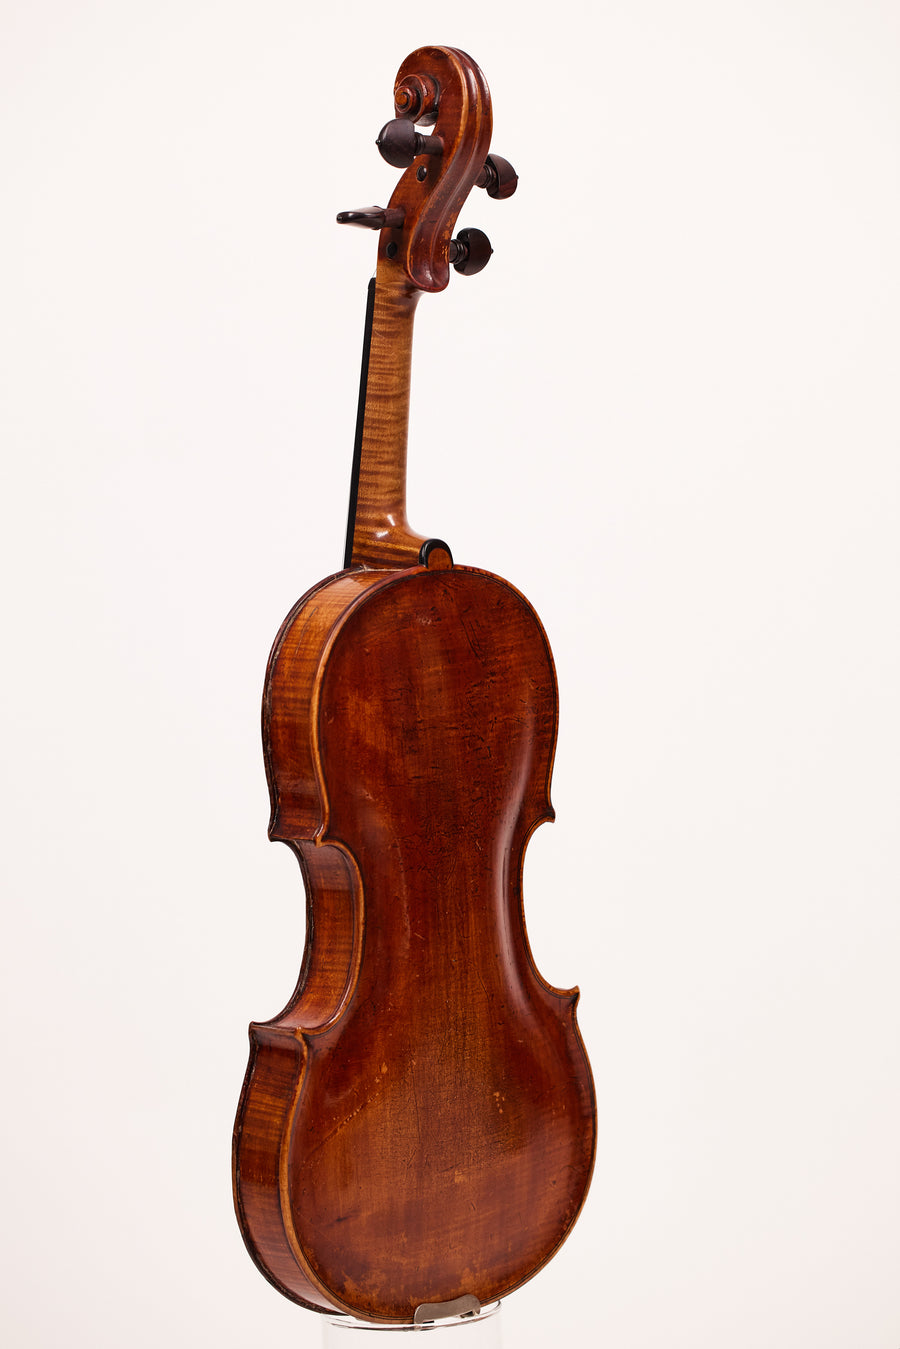 A Fine Violin By Johann Adam Schonfelder, 1761.